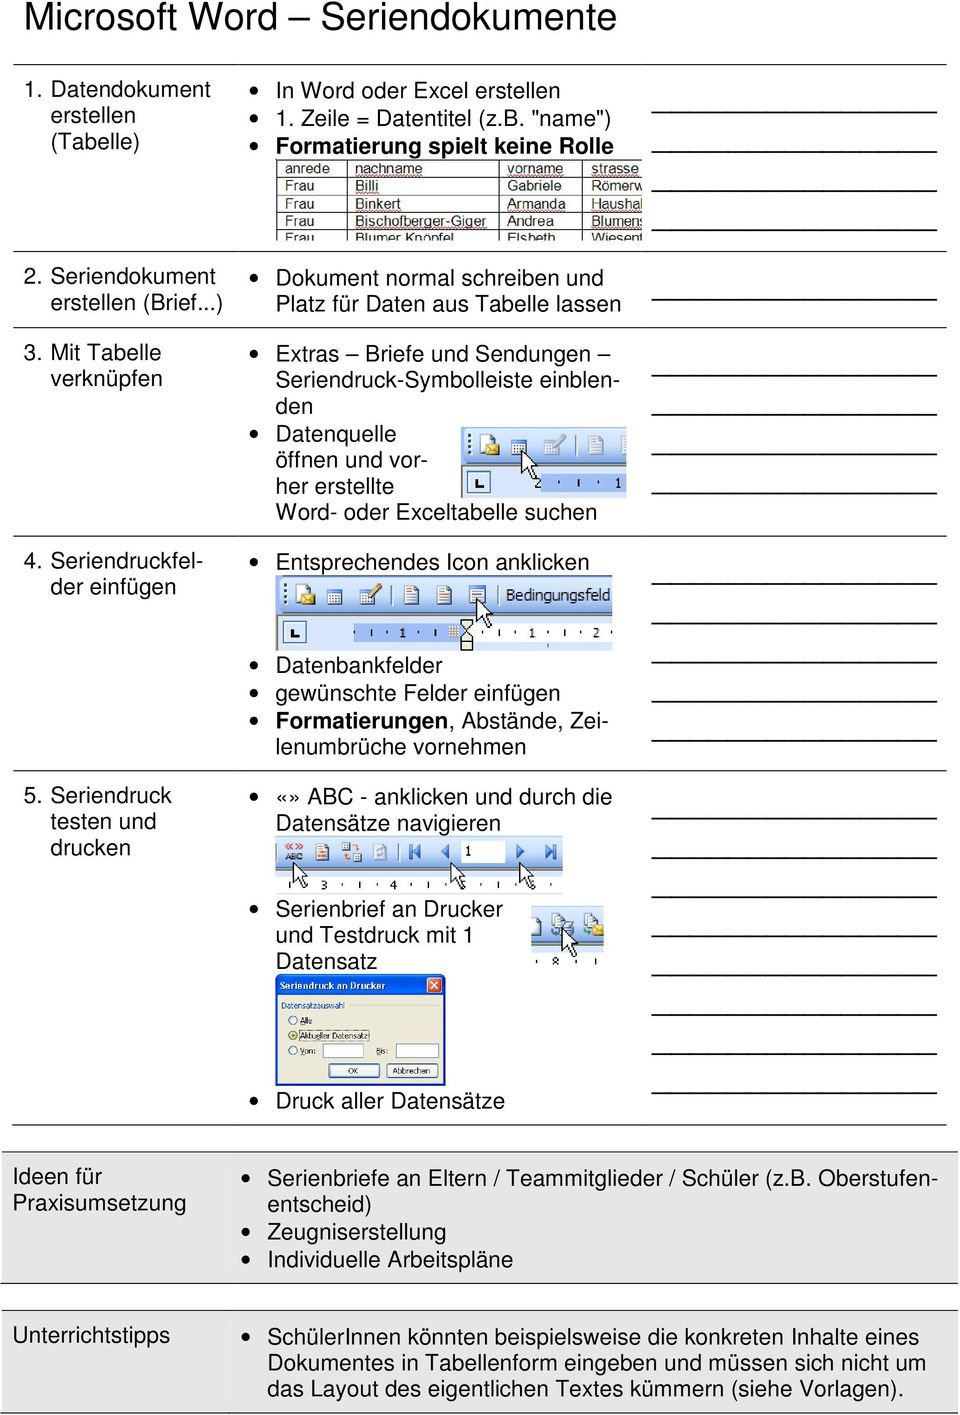 Microsoft Word Vorlagen Datei Schablone Pdf